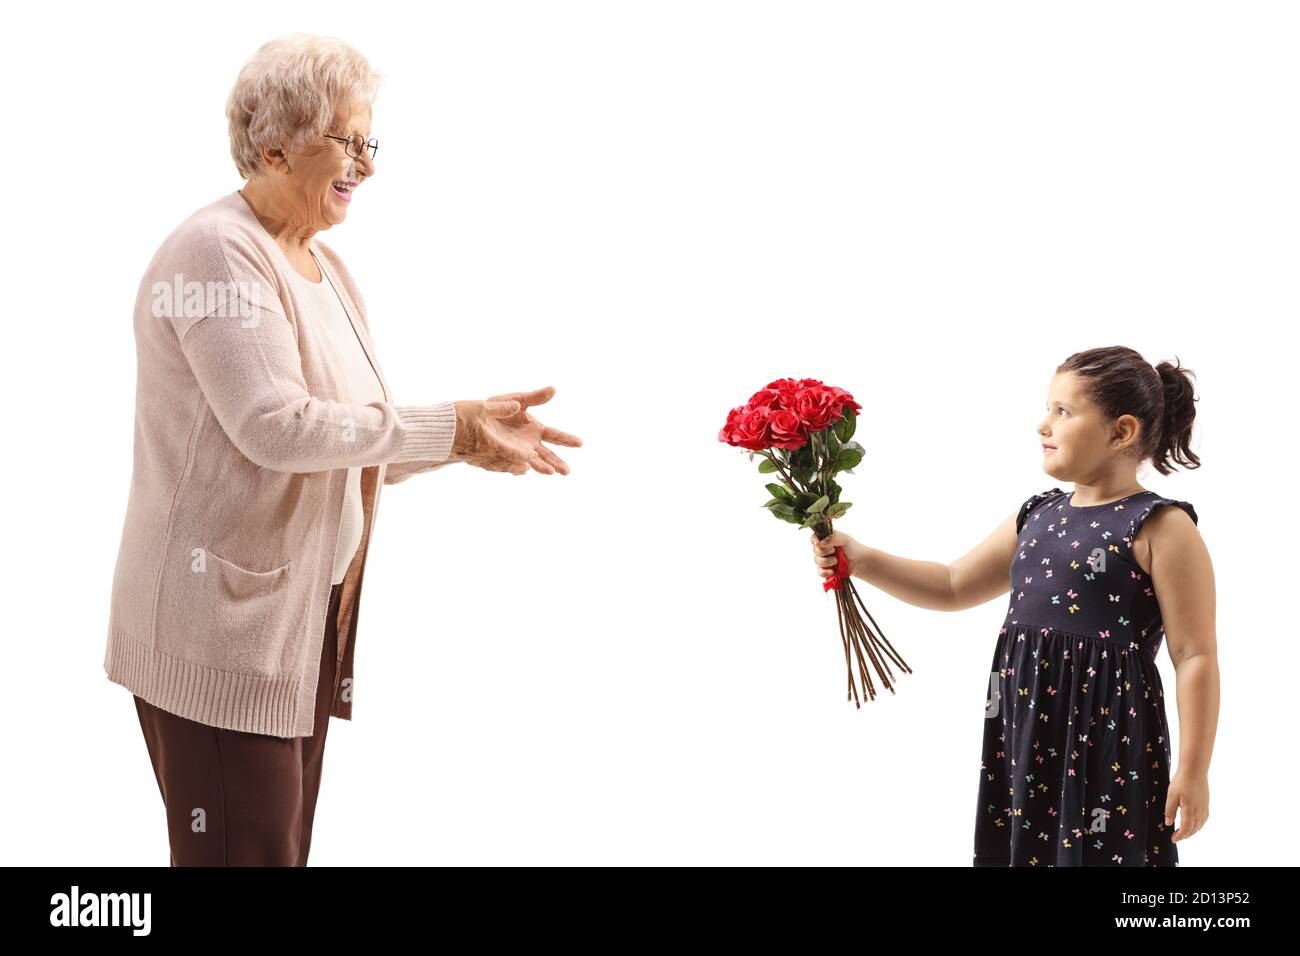 Fille donnant un bouquet de roses rouges à une grand-mère isolé sur fond blanc Banque D'Images